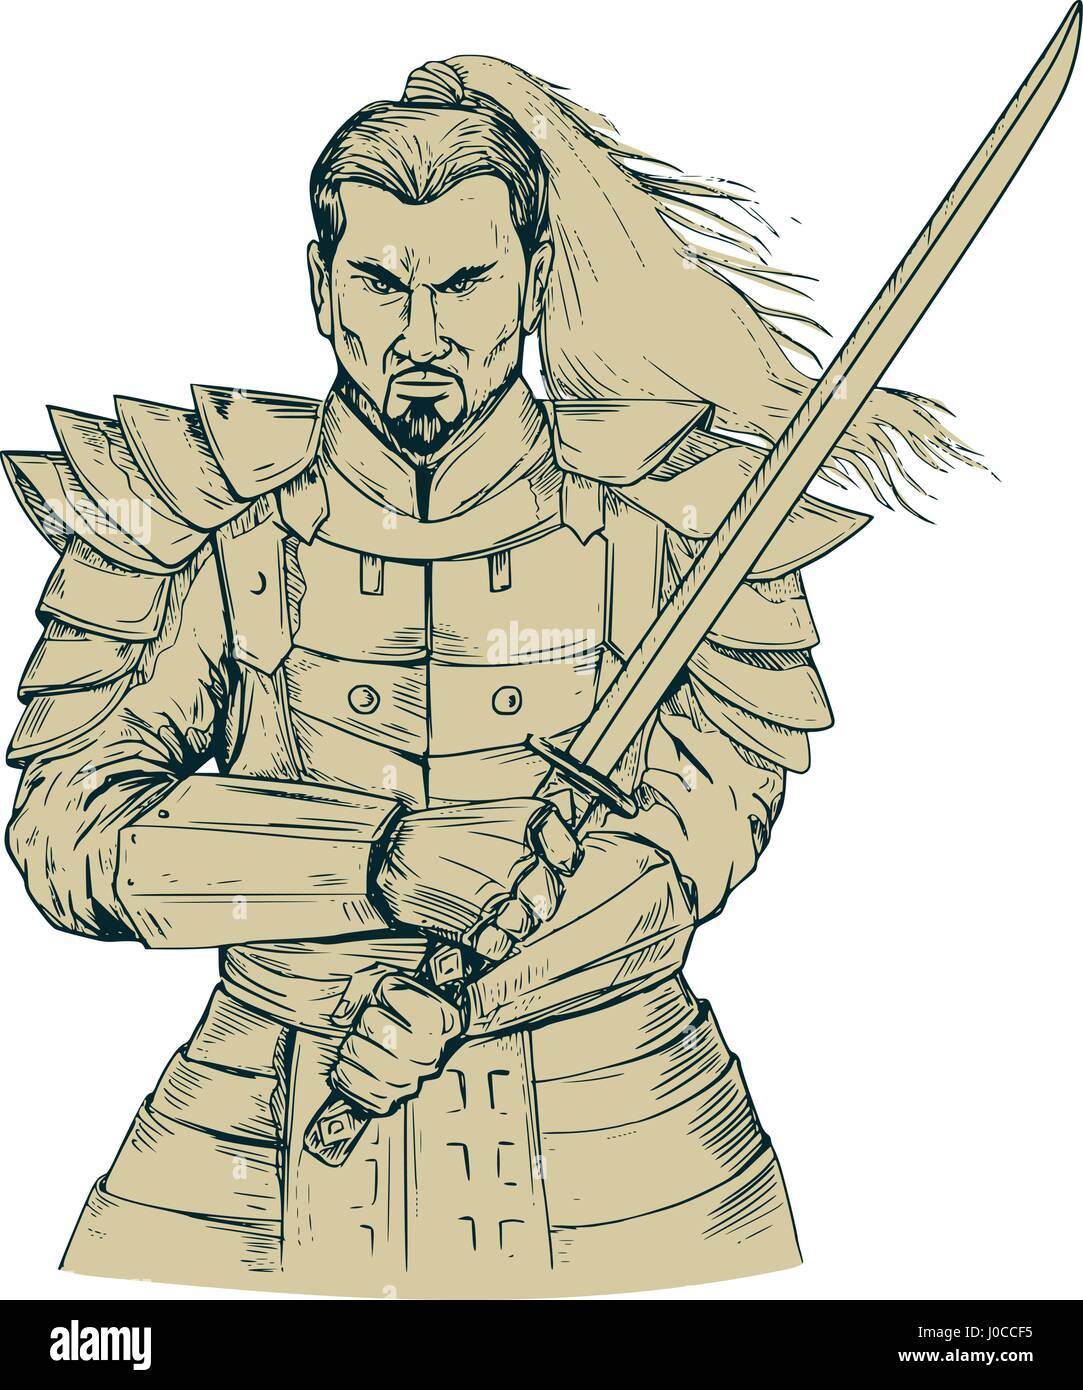 Style croquis dessin illustration d'un Samurai Warrior holding katana Épée dans une position d'épé vue de l'avant ensemble isolées sur fond blanc. Illustration de Vecteur